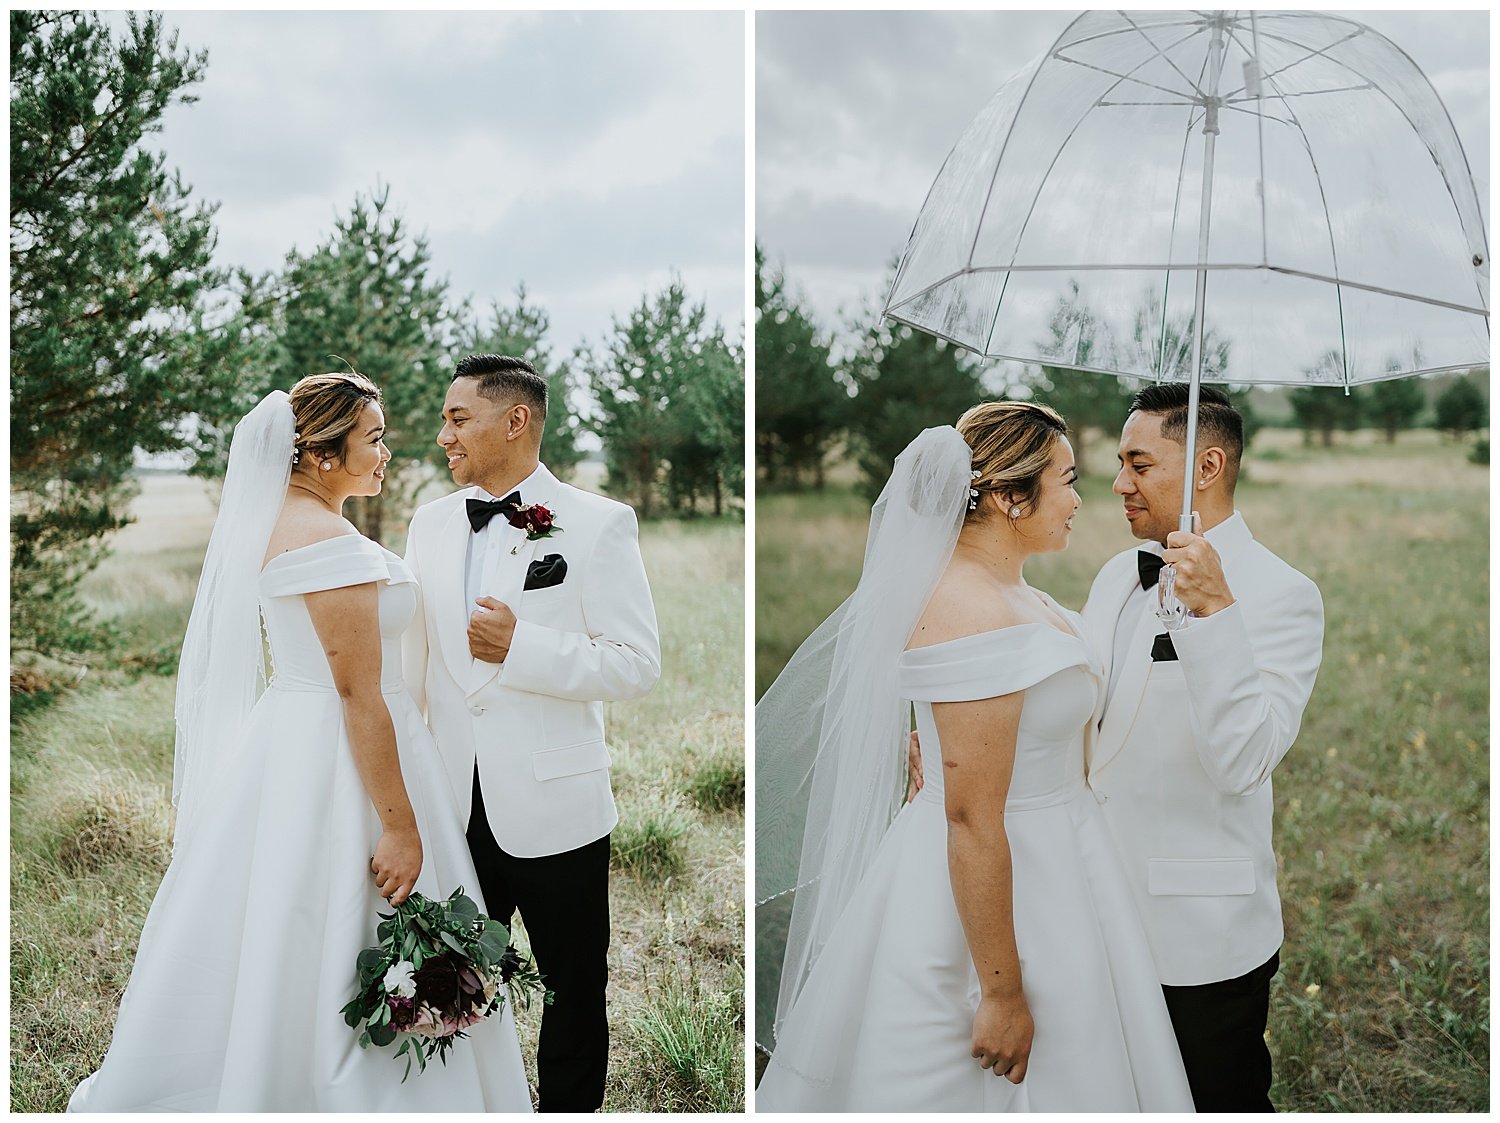 Shania & Paolo’s Beautiful Backyard Wedding Winnipeg Manitoba 46.jpg